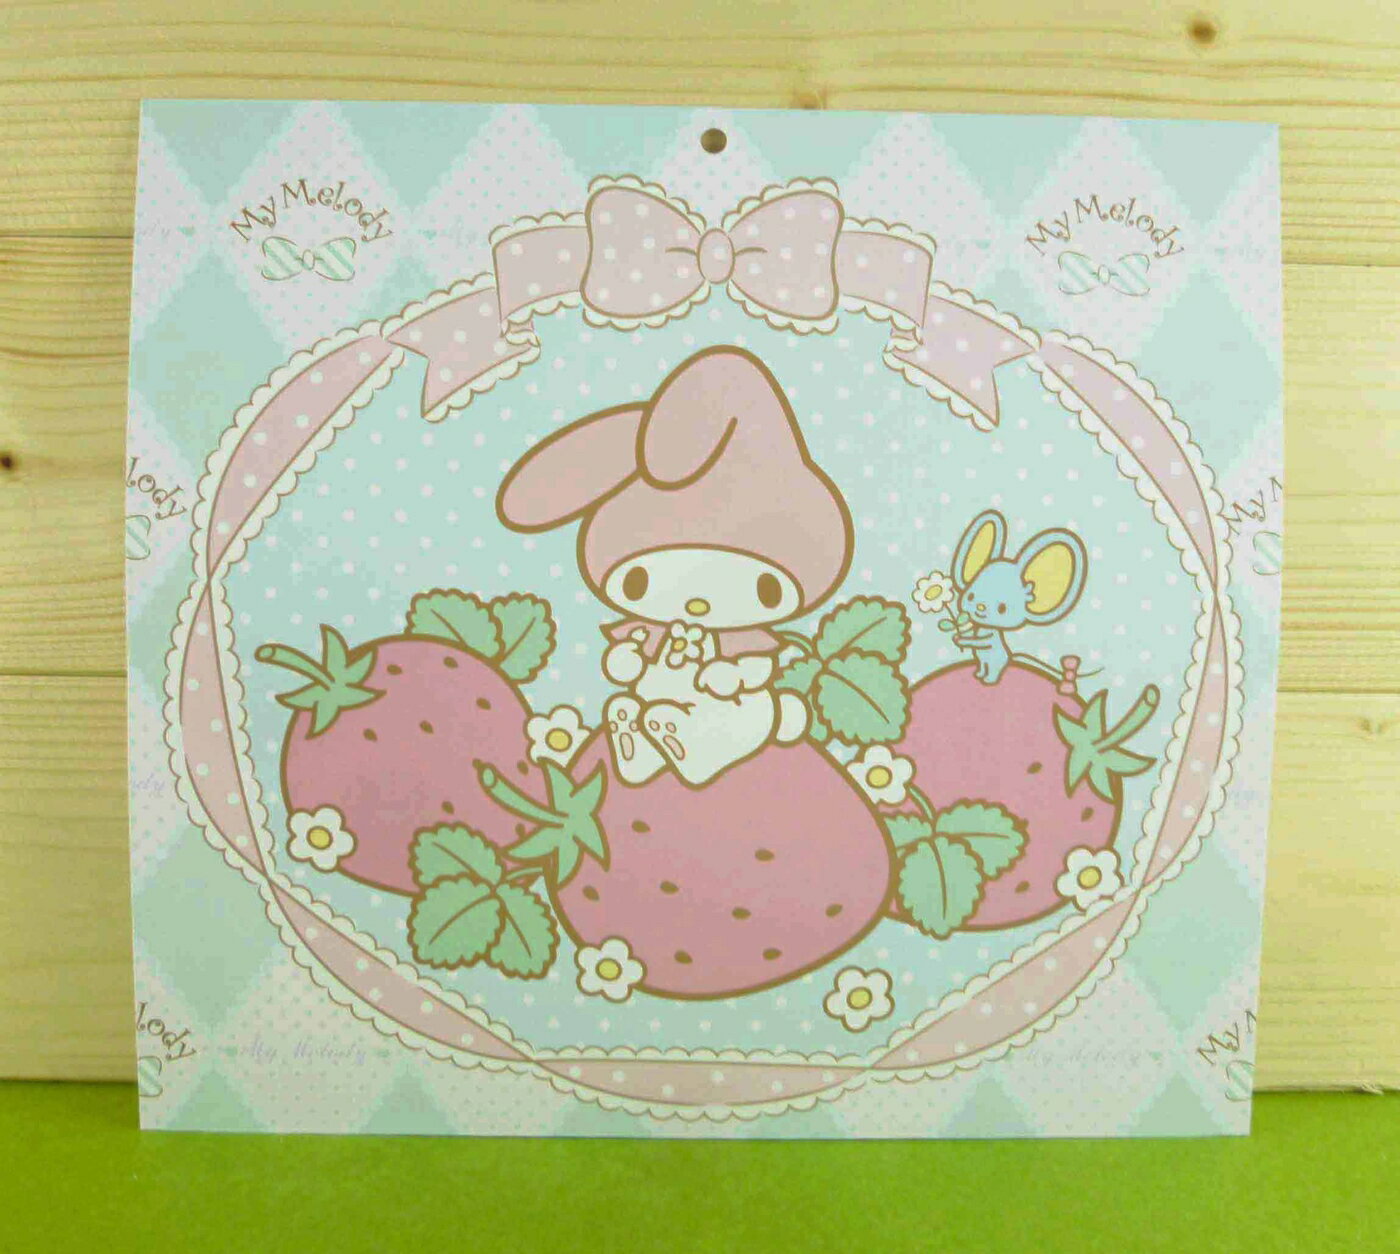 【震撼精品百貨】My Melody 美樂蒂 雙面卡片-藍草莓 震撼日式精品百貨